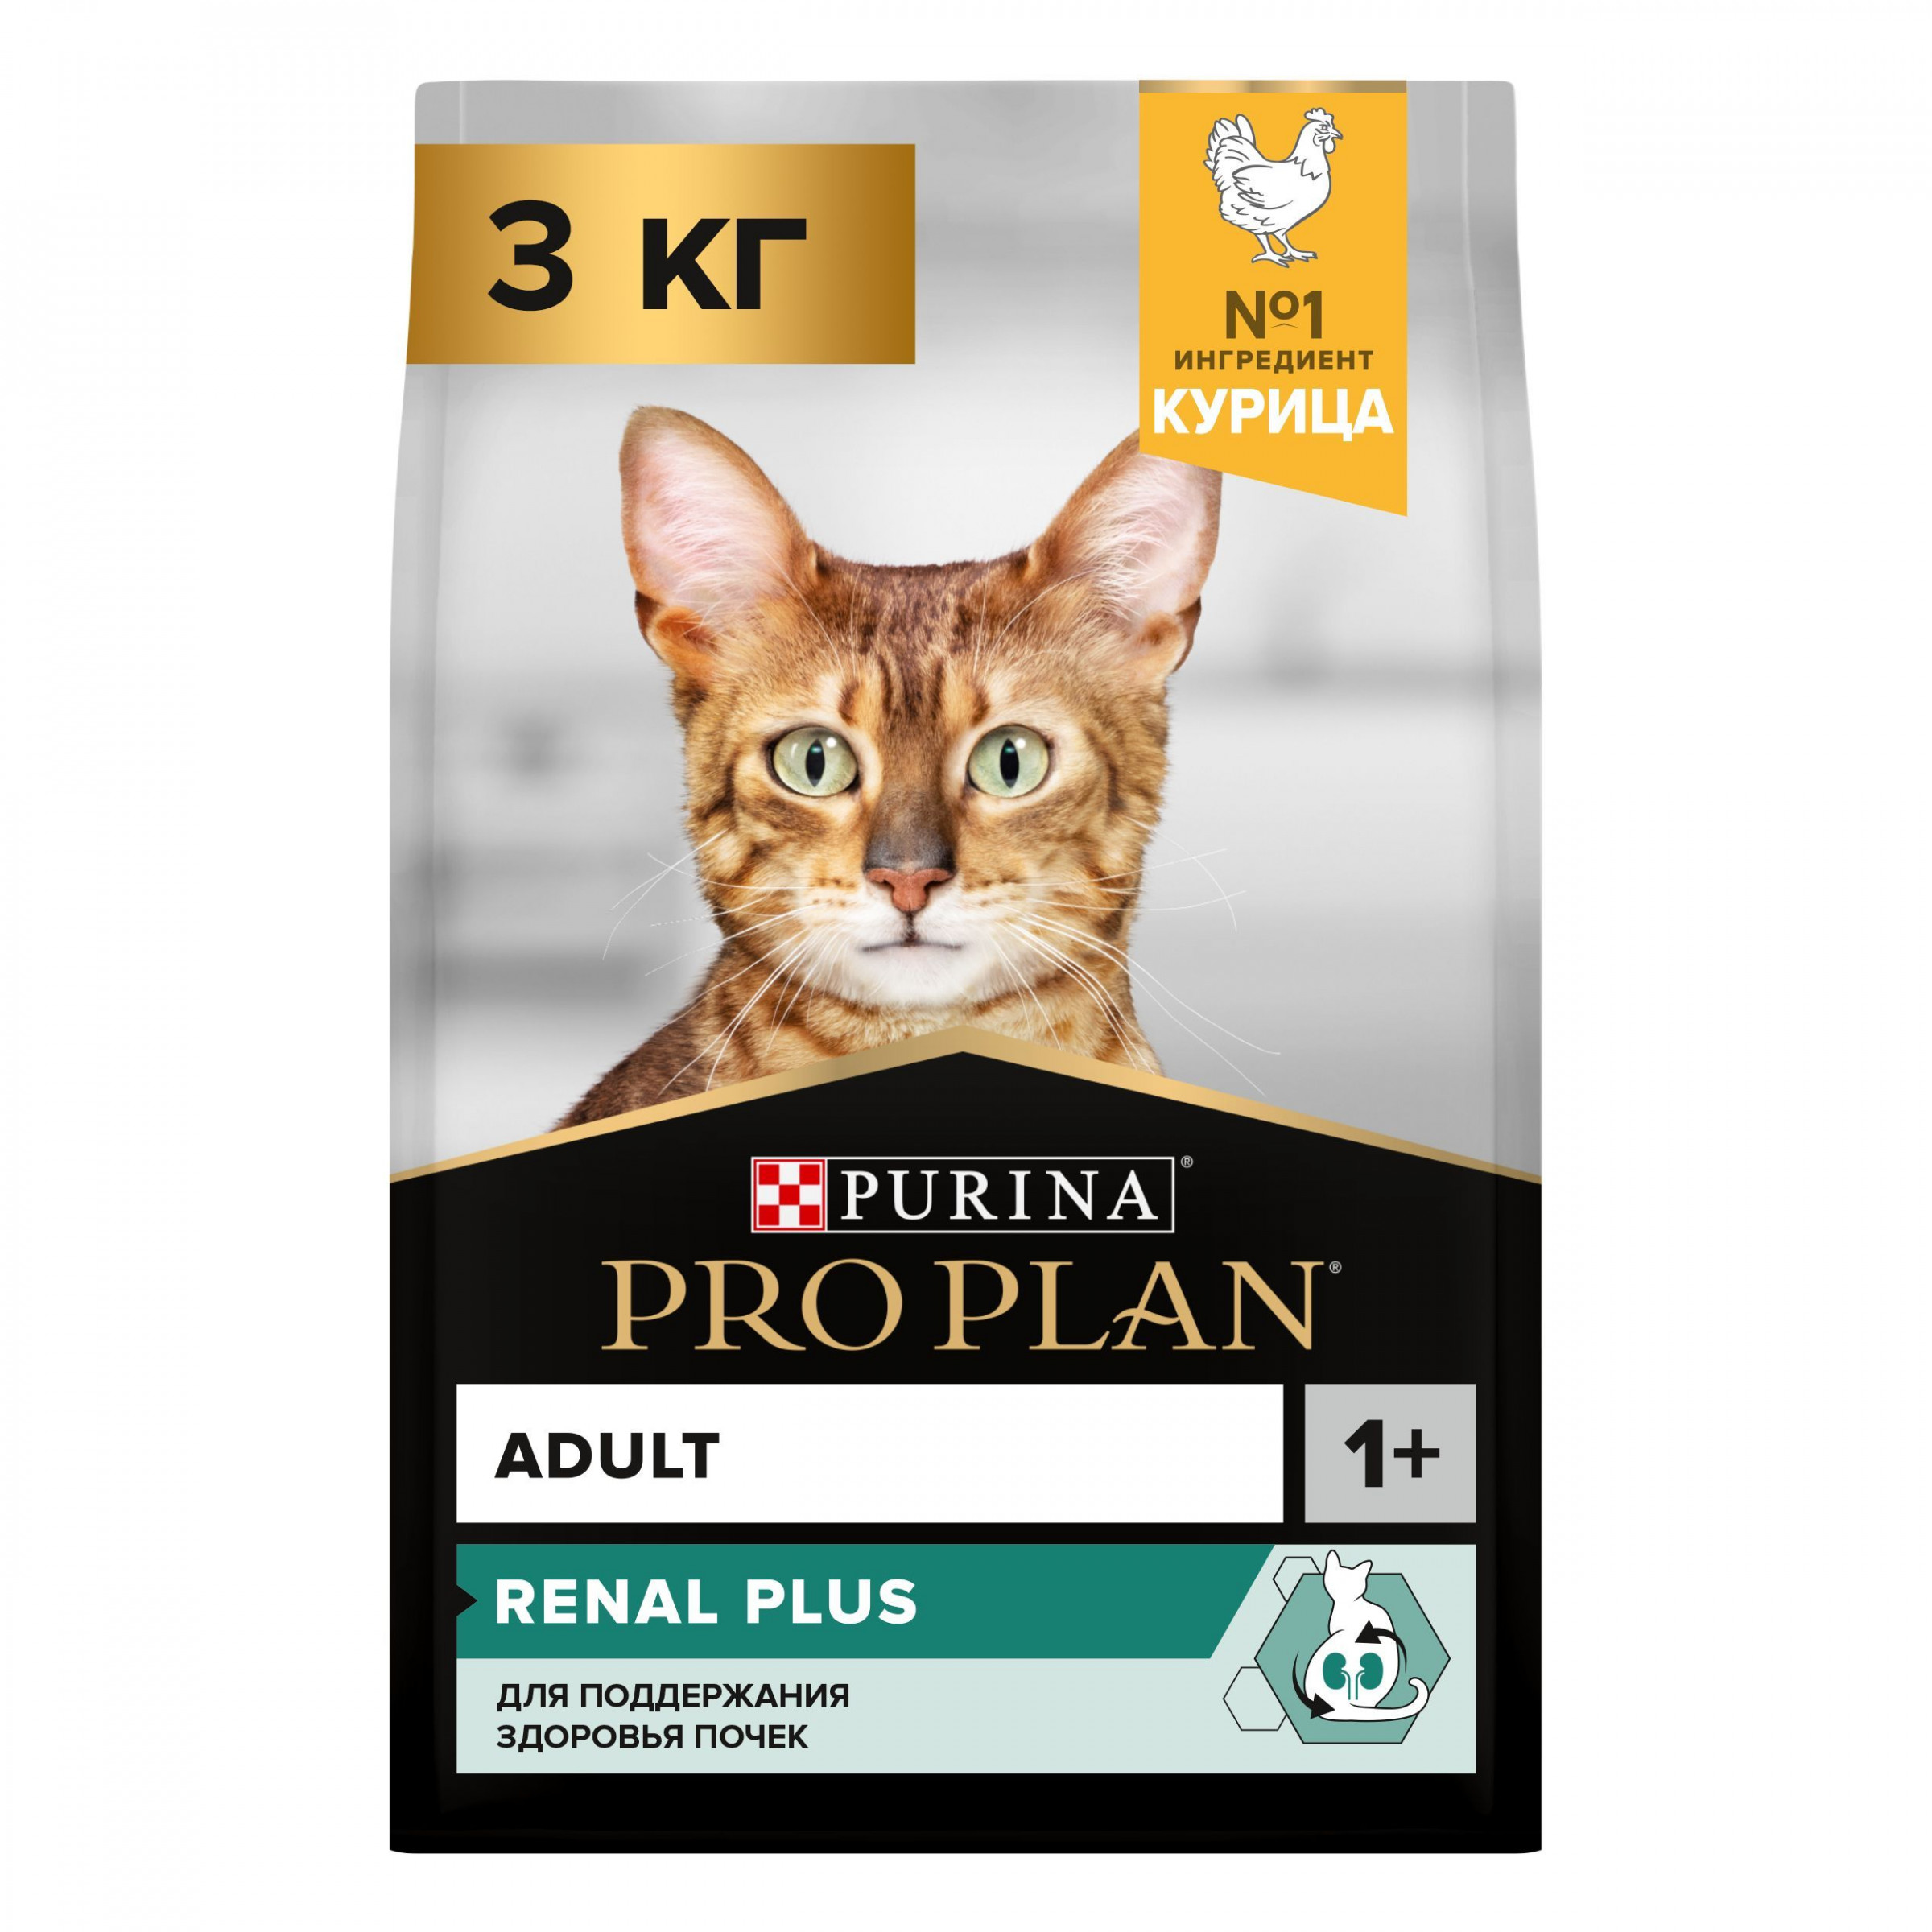 Сухой корм Pro Plan Renal Plus для взрослых кошек для поддержания здоровья почек c курицей, 3 кг